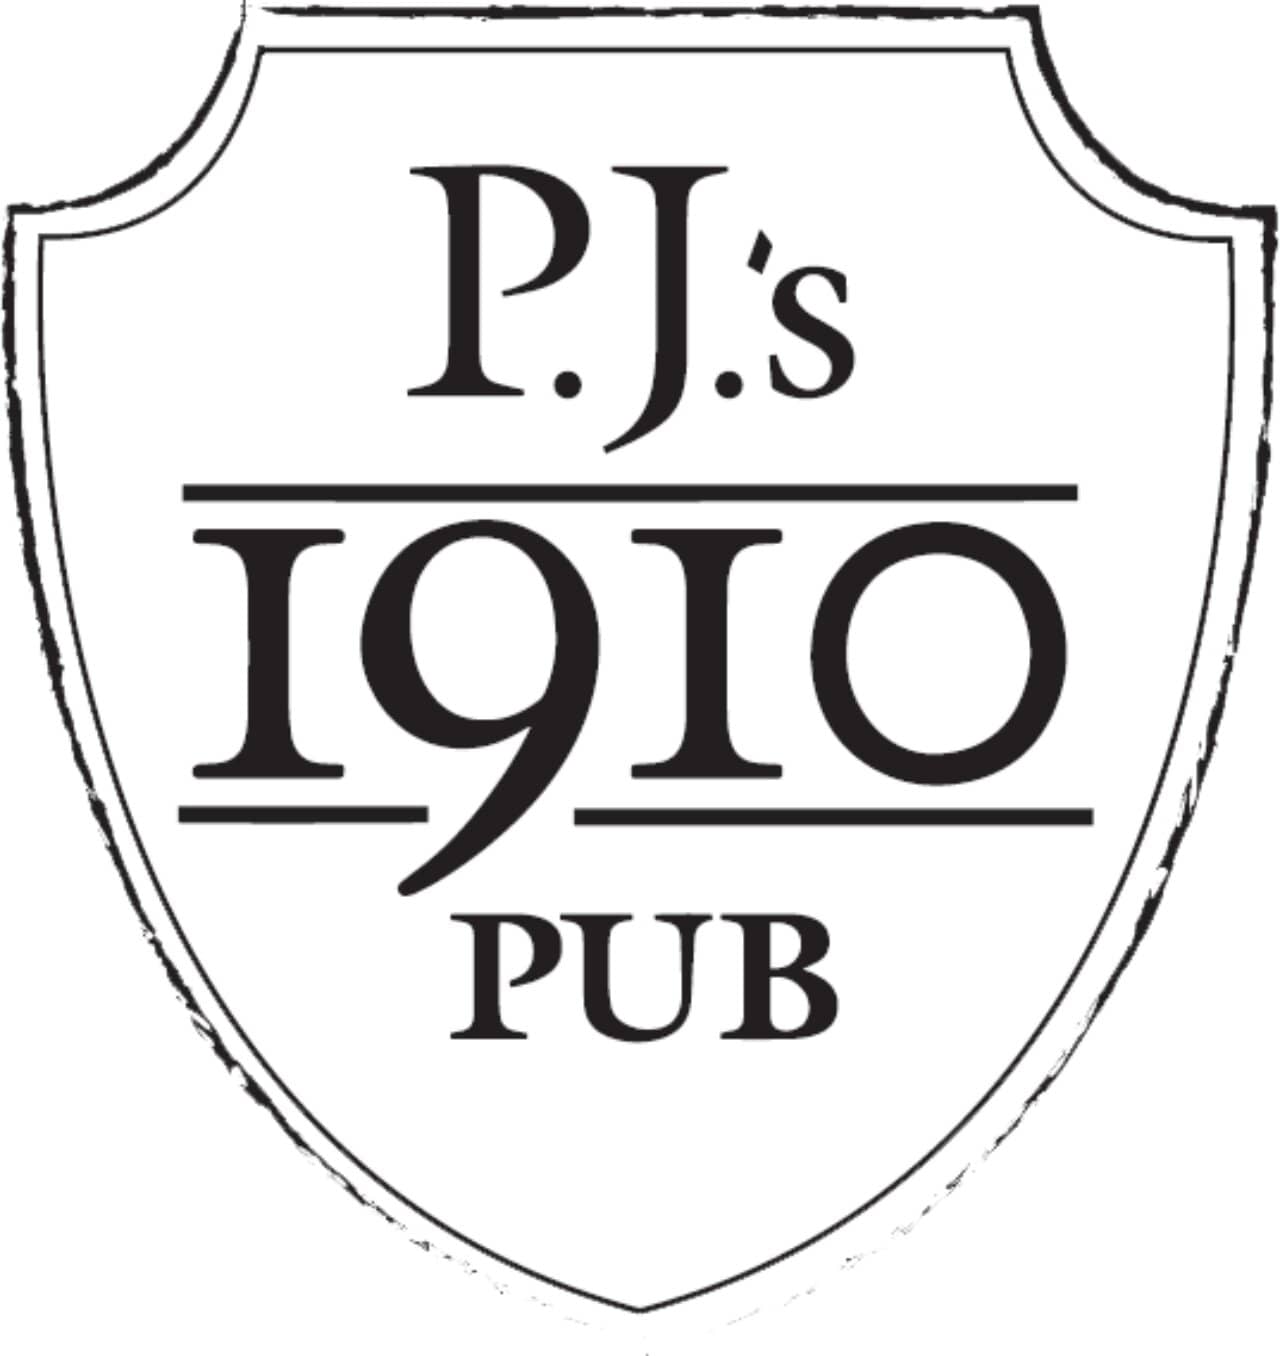 PJs 1910 Pub